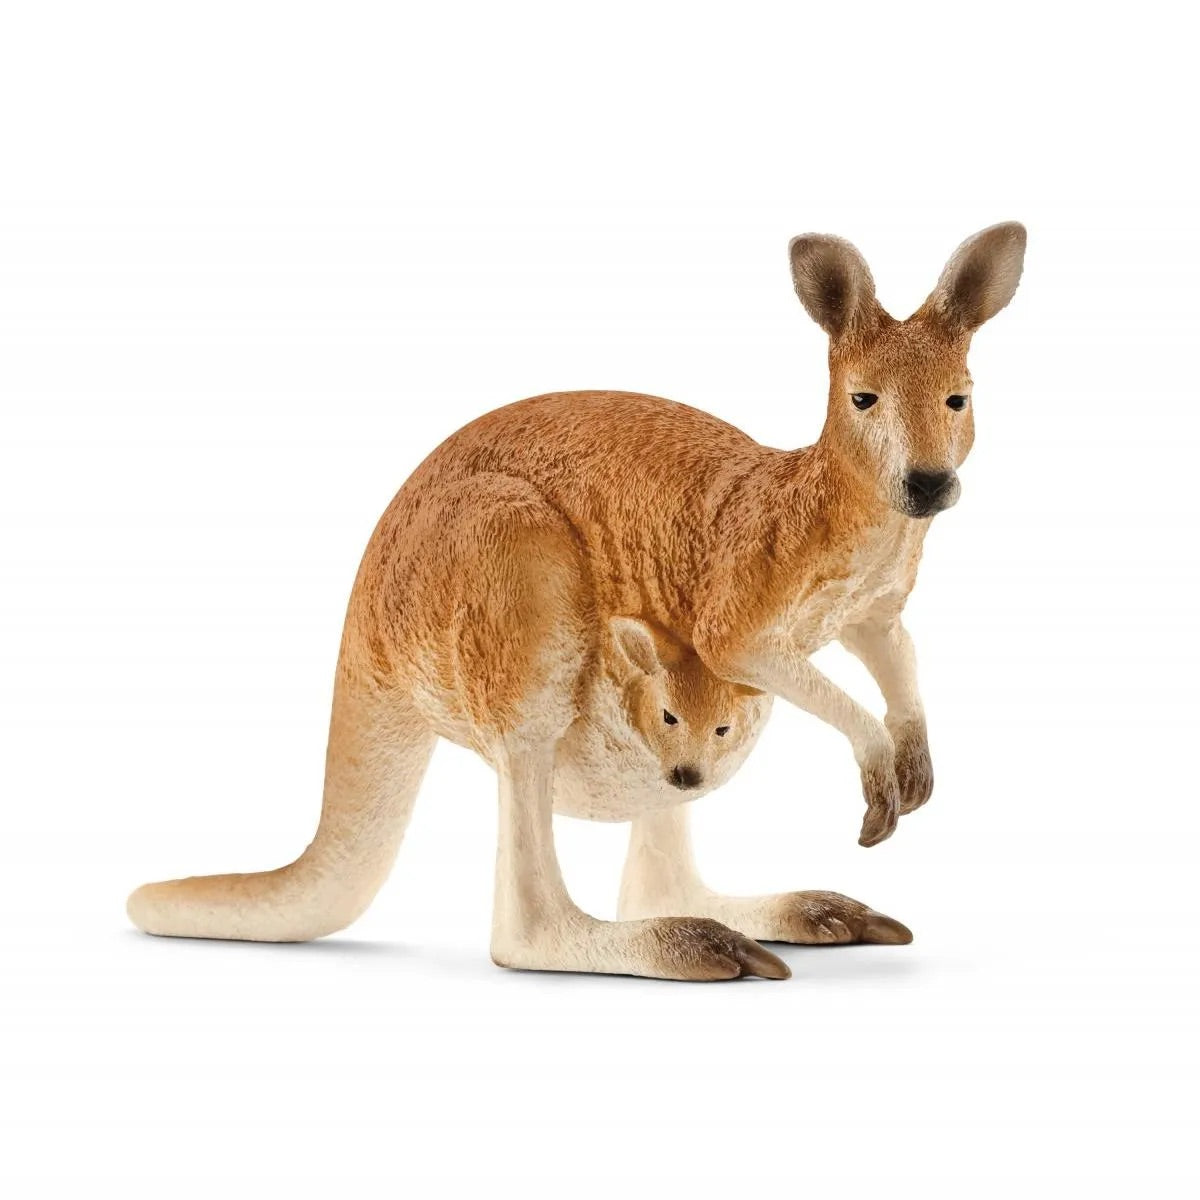 Kangaroo by Schleich #14756